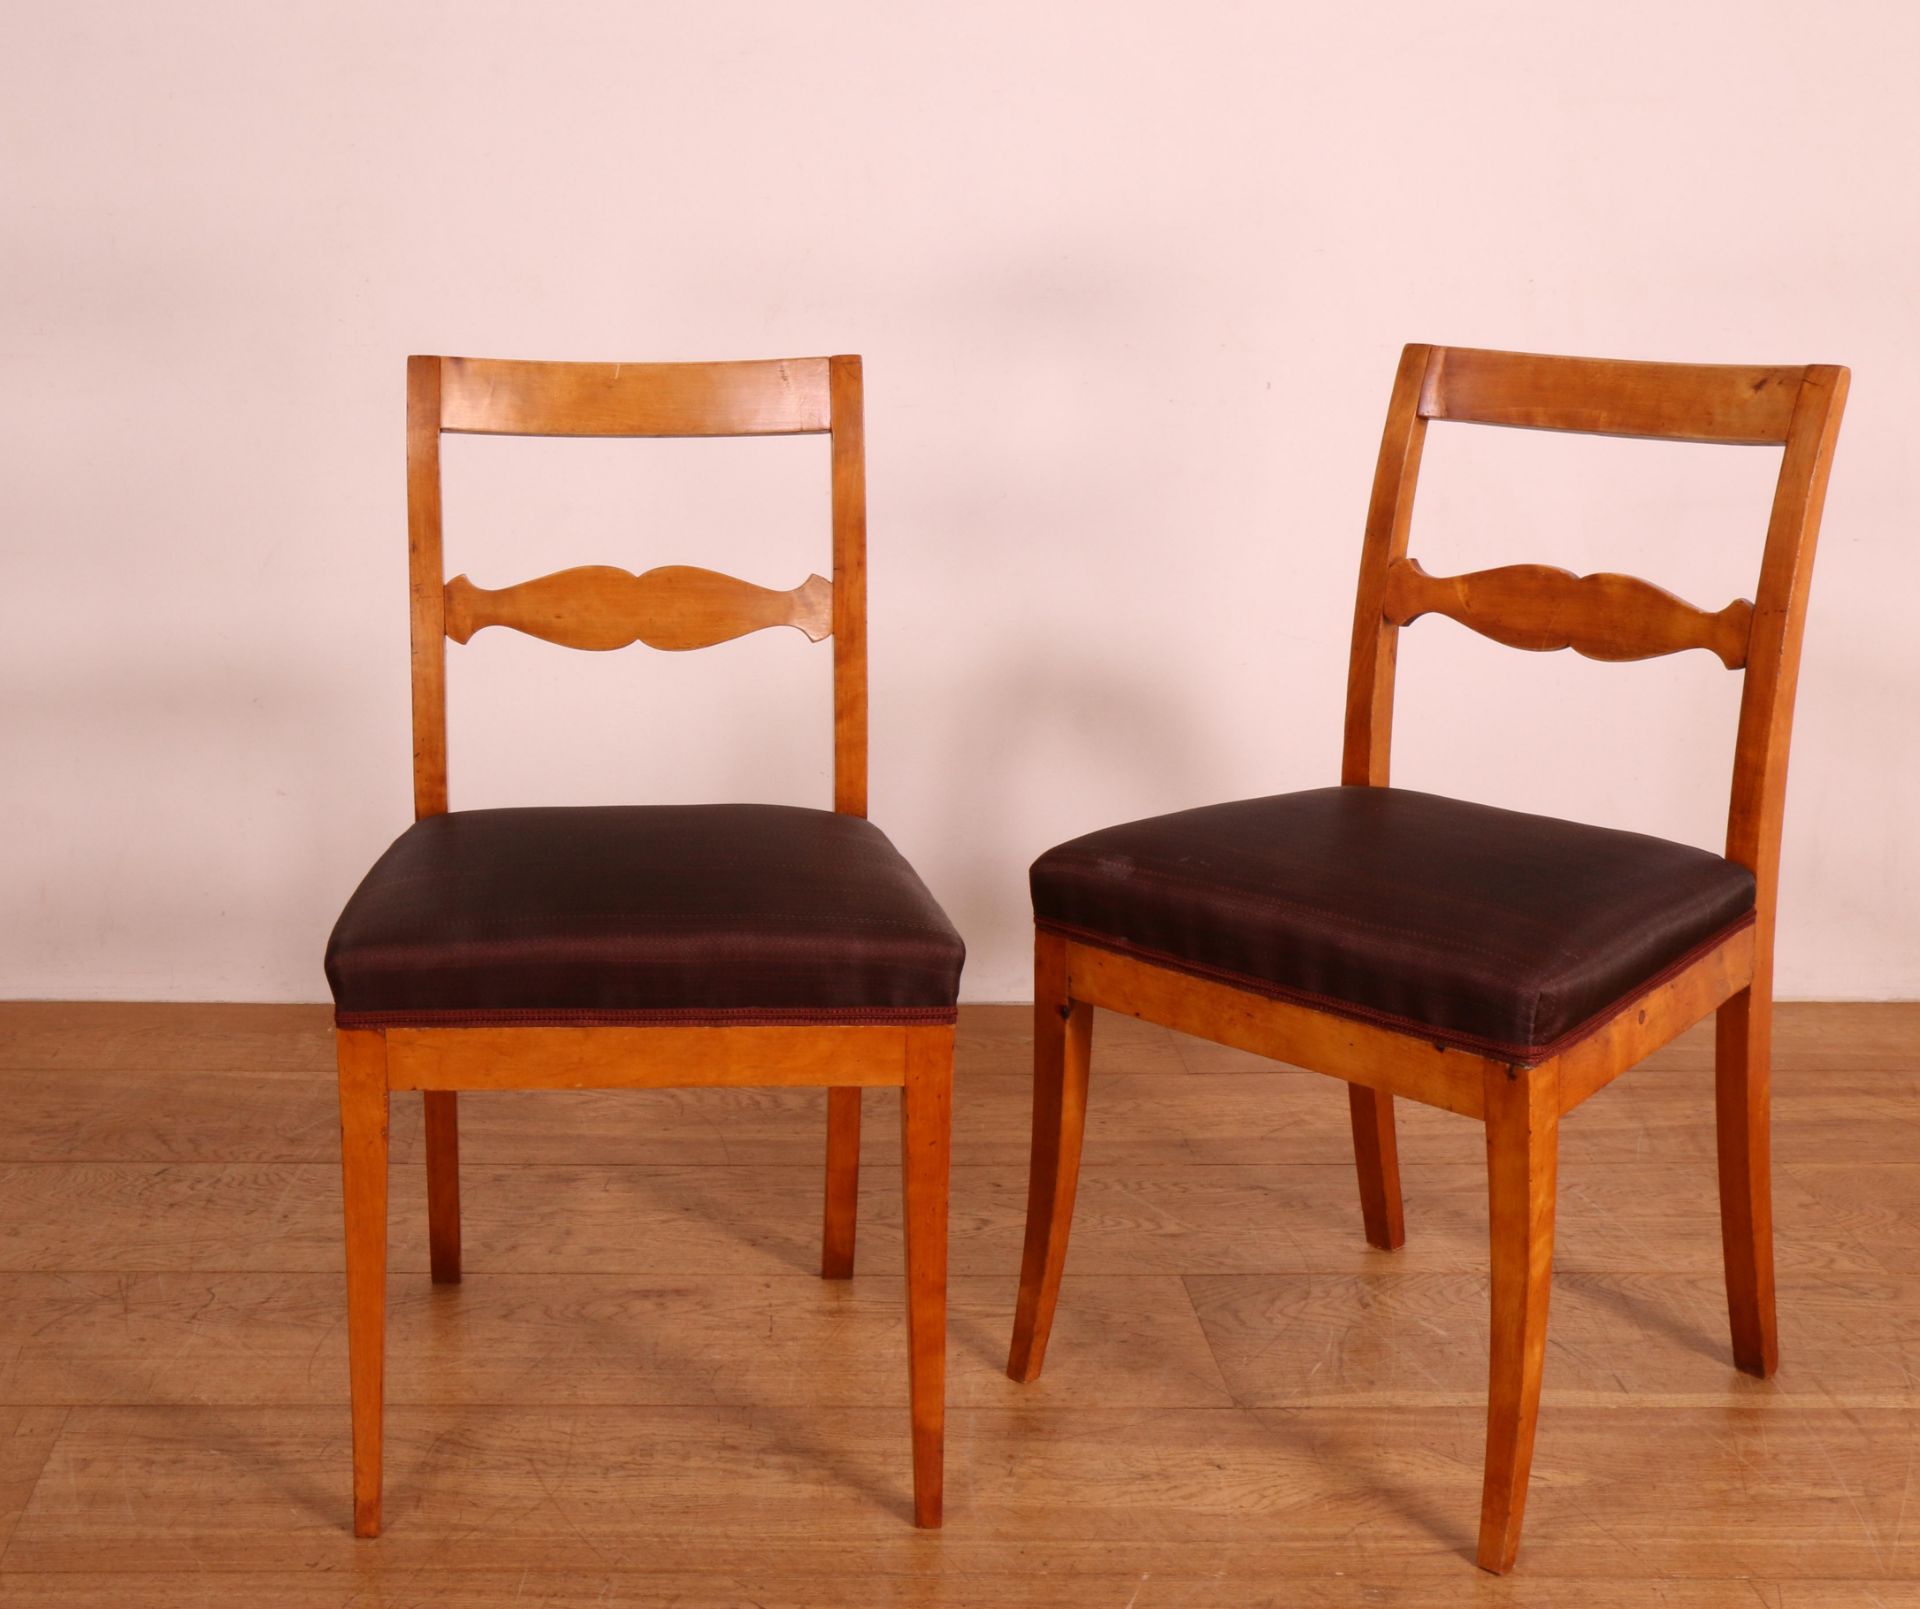 Zweden, set van zes berkenhouten stoelen, ca. 1830, - Image 2 of 2